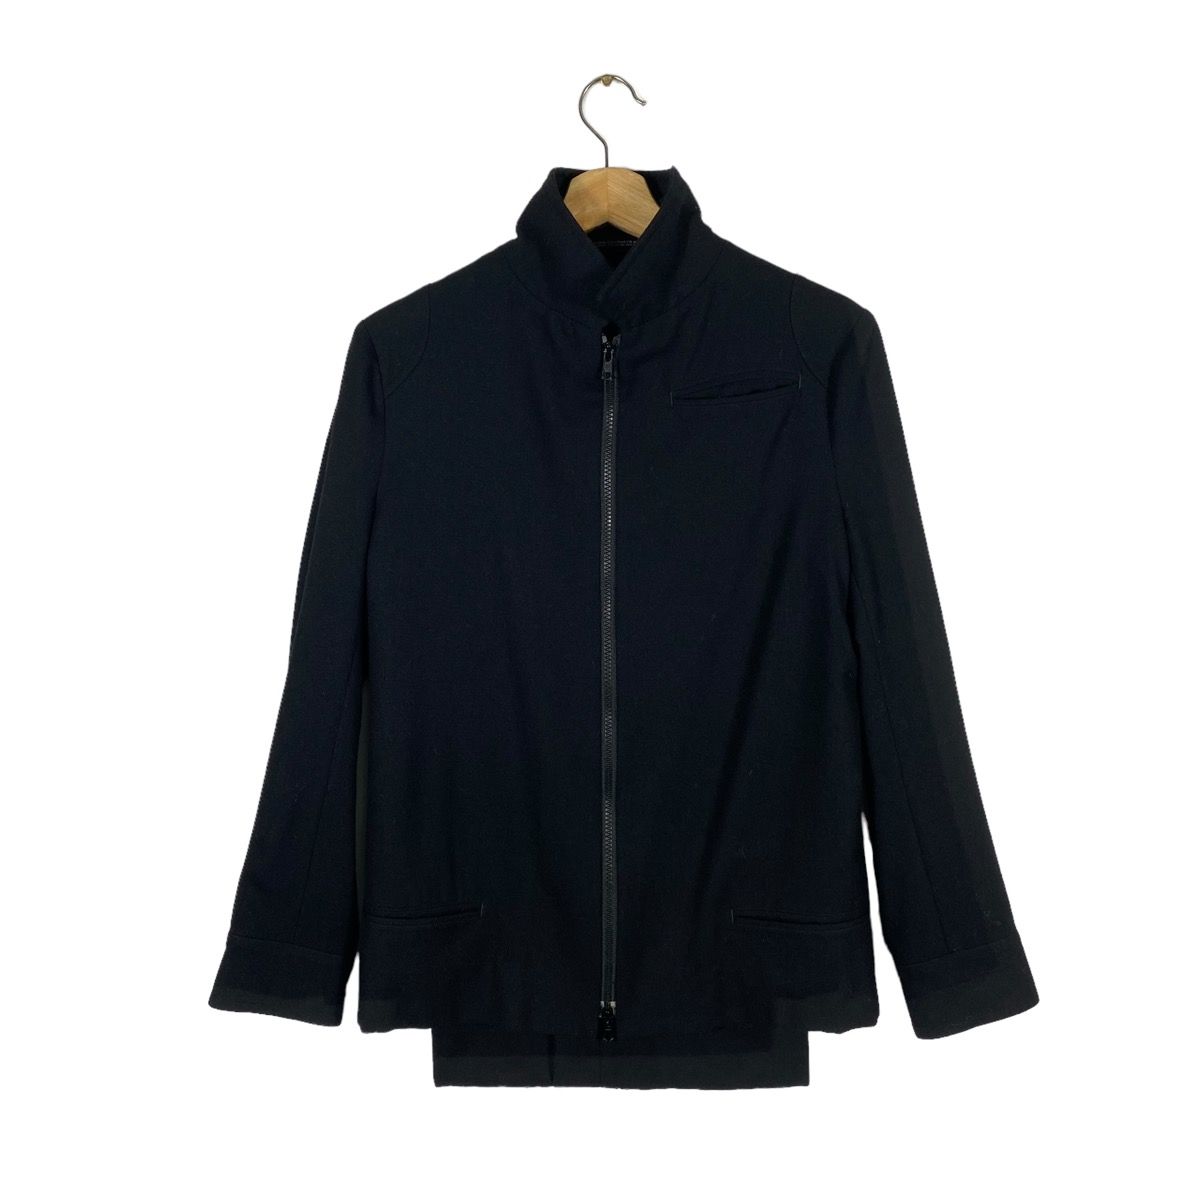 Vintage 90s Y's Yohji Yamamoto Wool Jacket Zipper Size 1 - 1